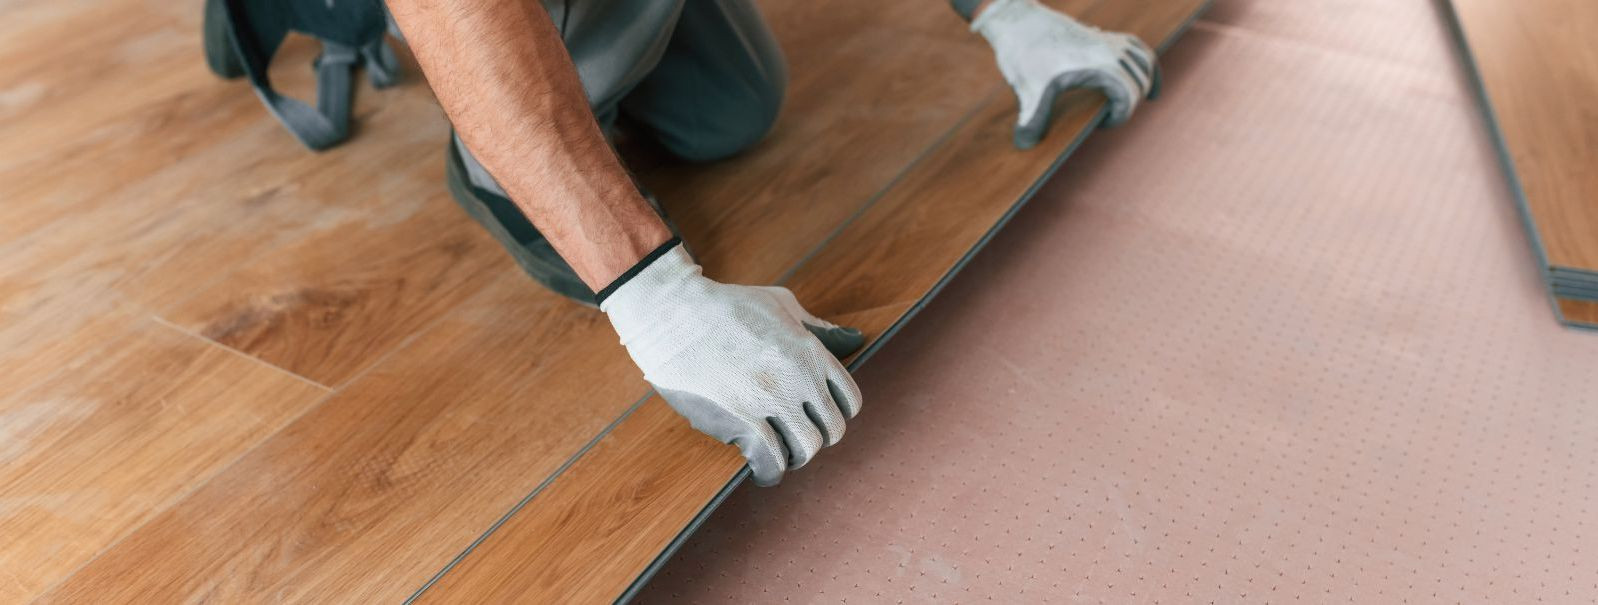 Kodu renoveerimisel või uue kodu ehitamisel seisame tihti silmitsi küsimusega, millist tüüpi põrandakatet eelistada. Laminaat- ja parkettpõrandad on mõlemad pop